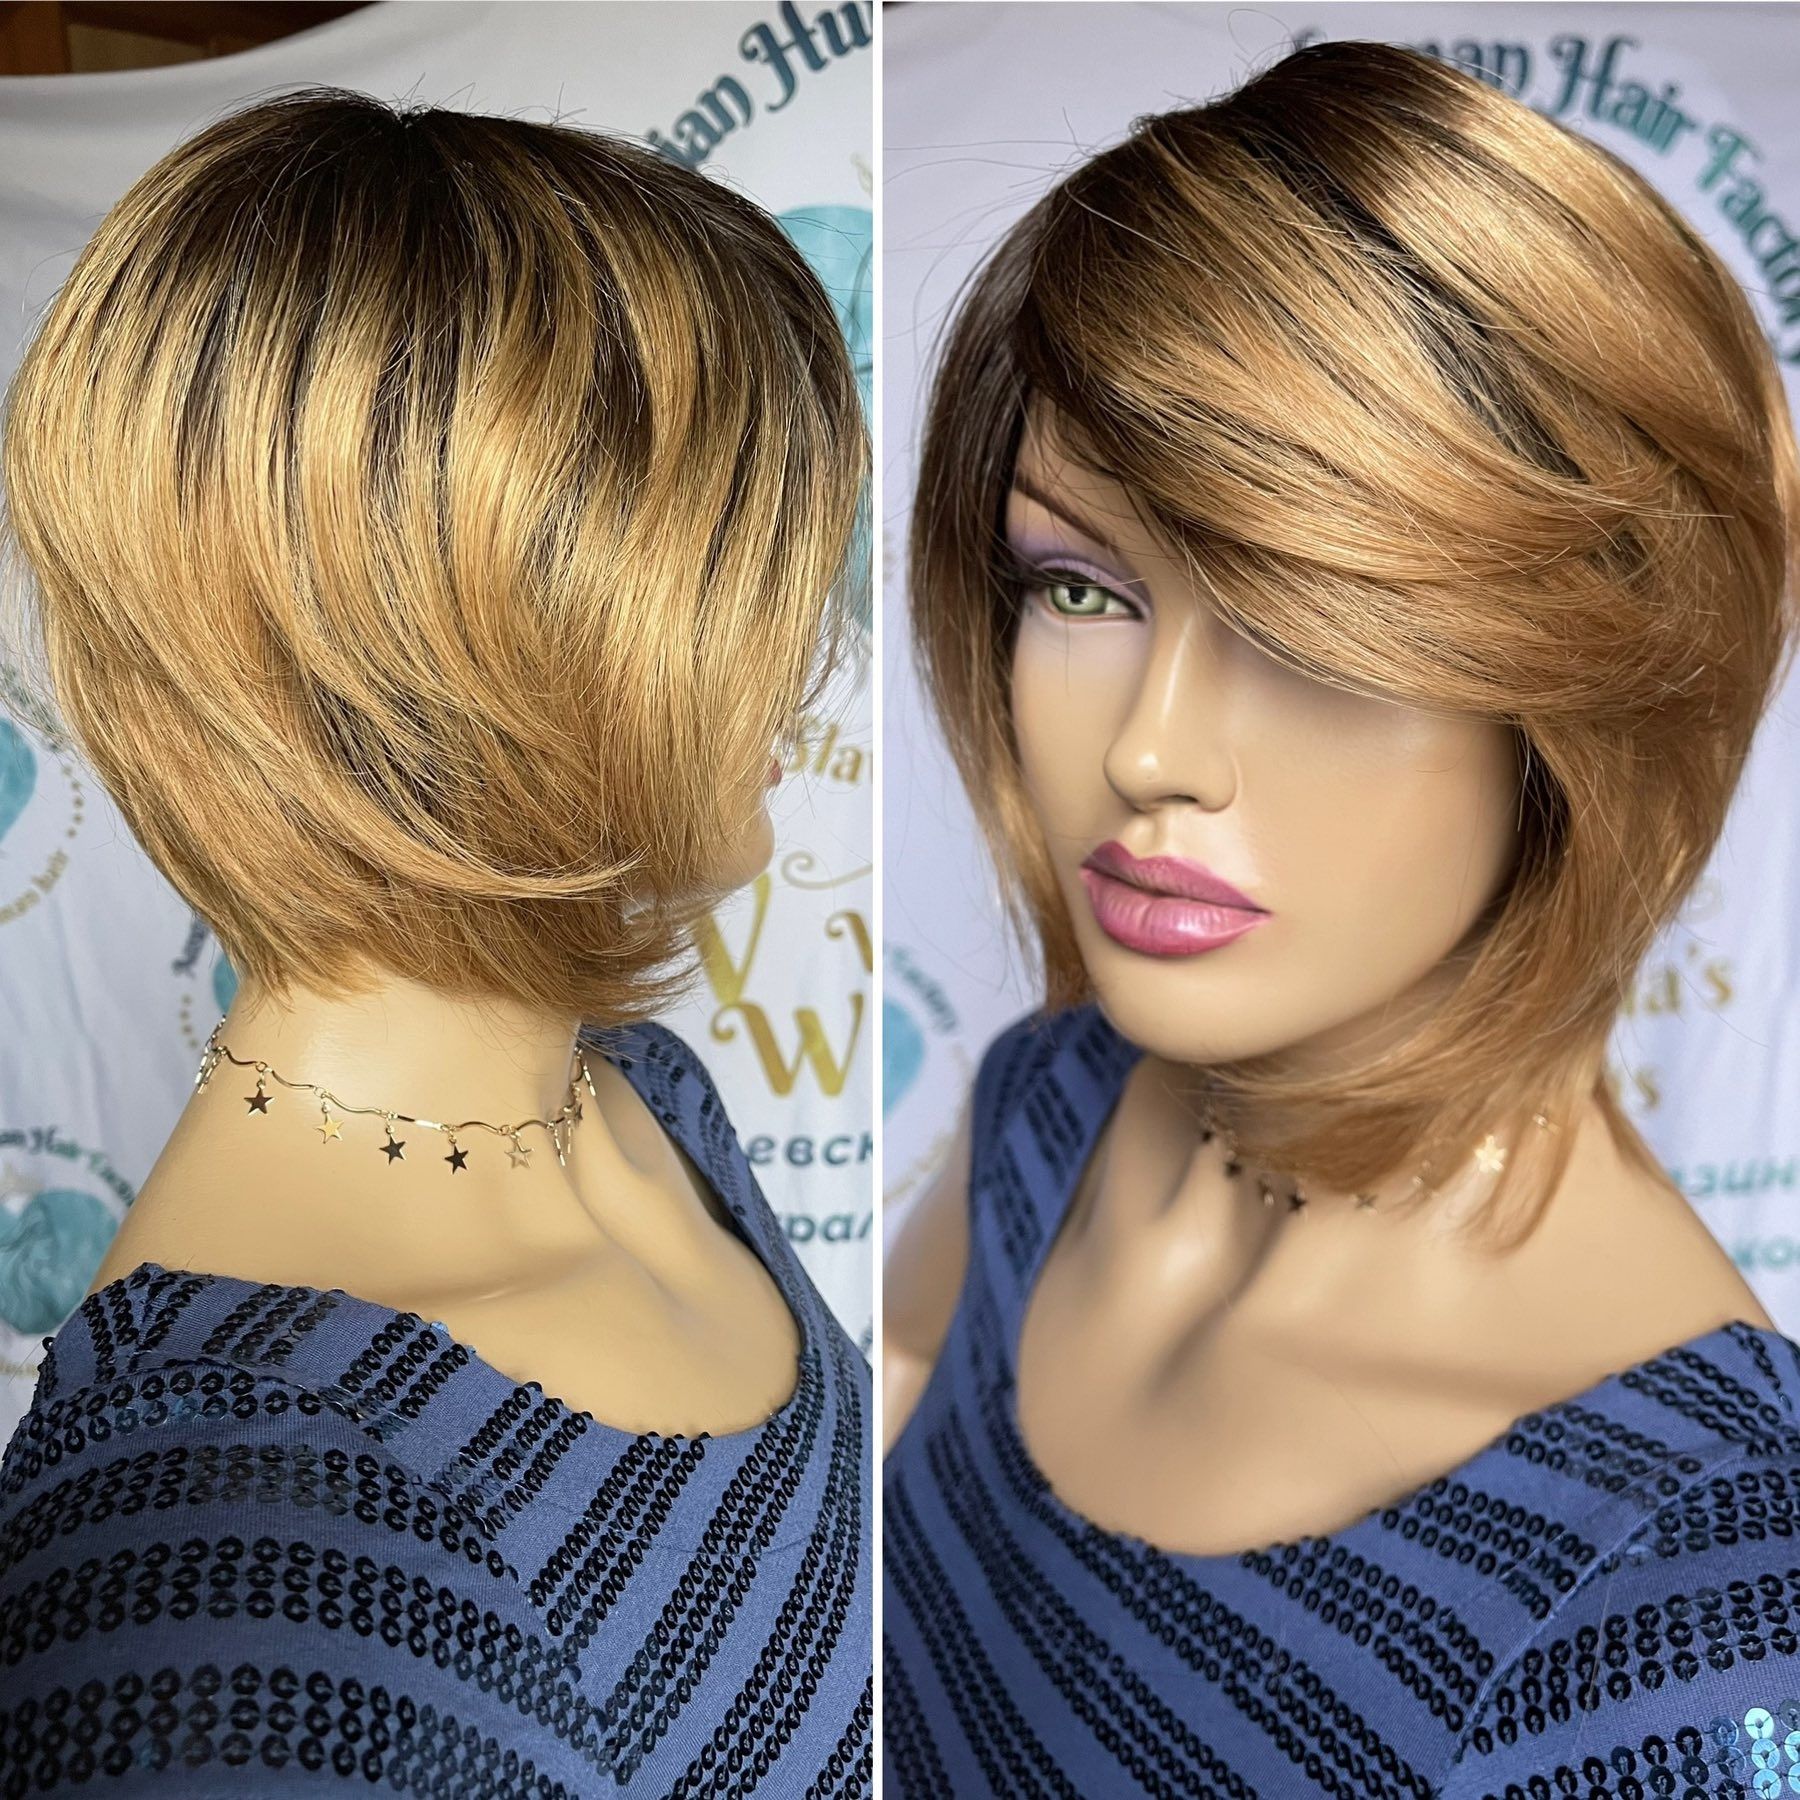 Натуральный парик перука славянские волосы омбре модная стрижка